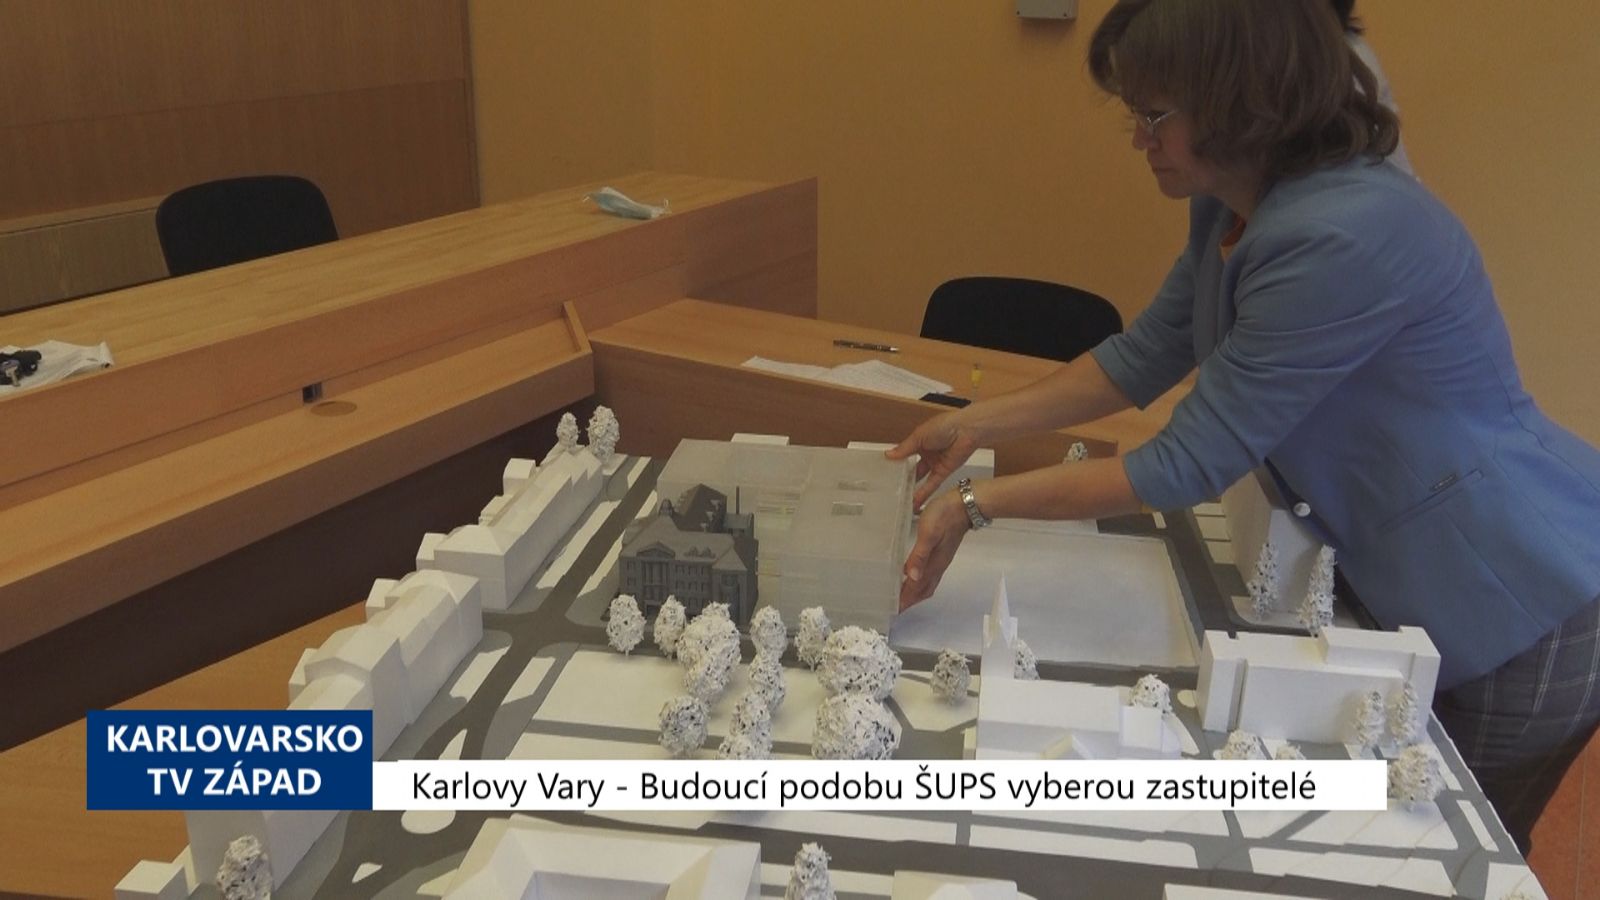 Karlovy Vary: Budoucí podobu SUPŠ vyberou zastupitelé (TV Západ)